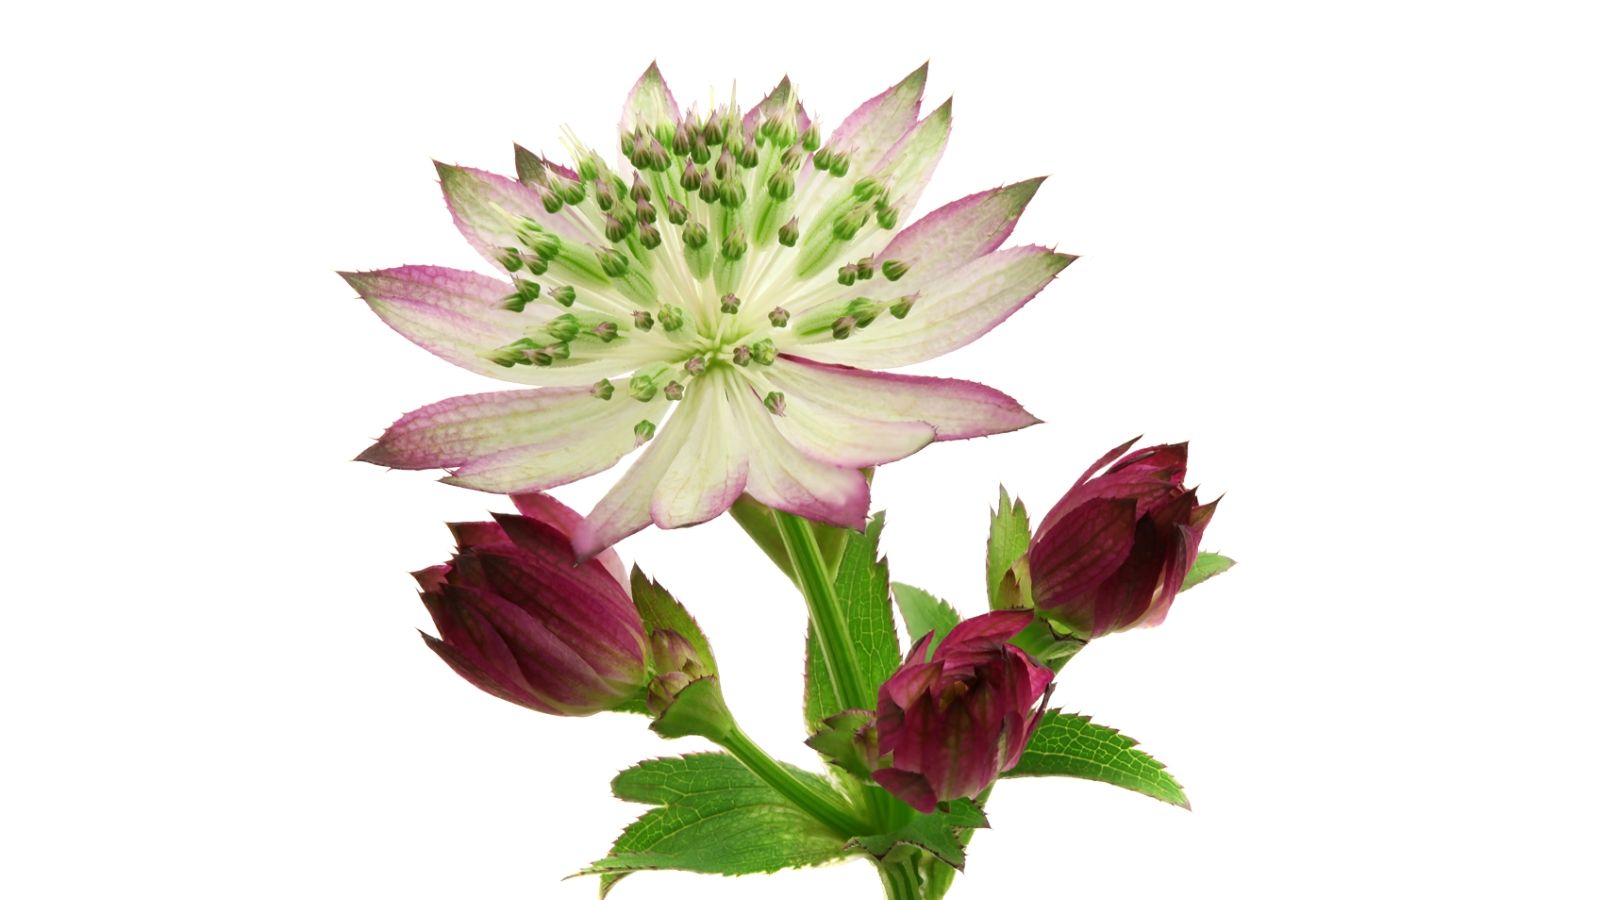 astrantia-star-of-promise®-cut-flower-on-thursd-facebook